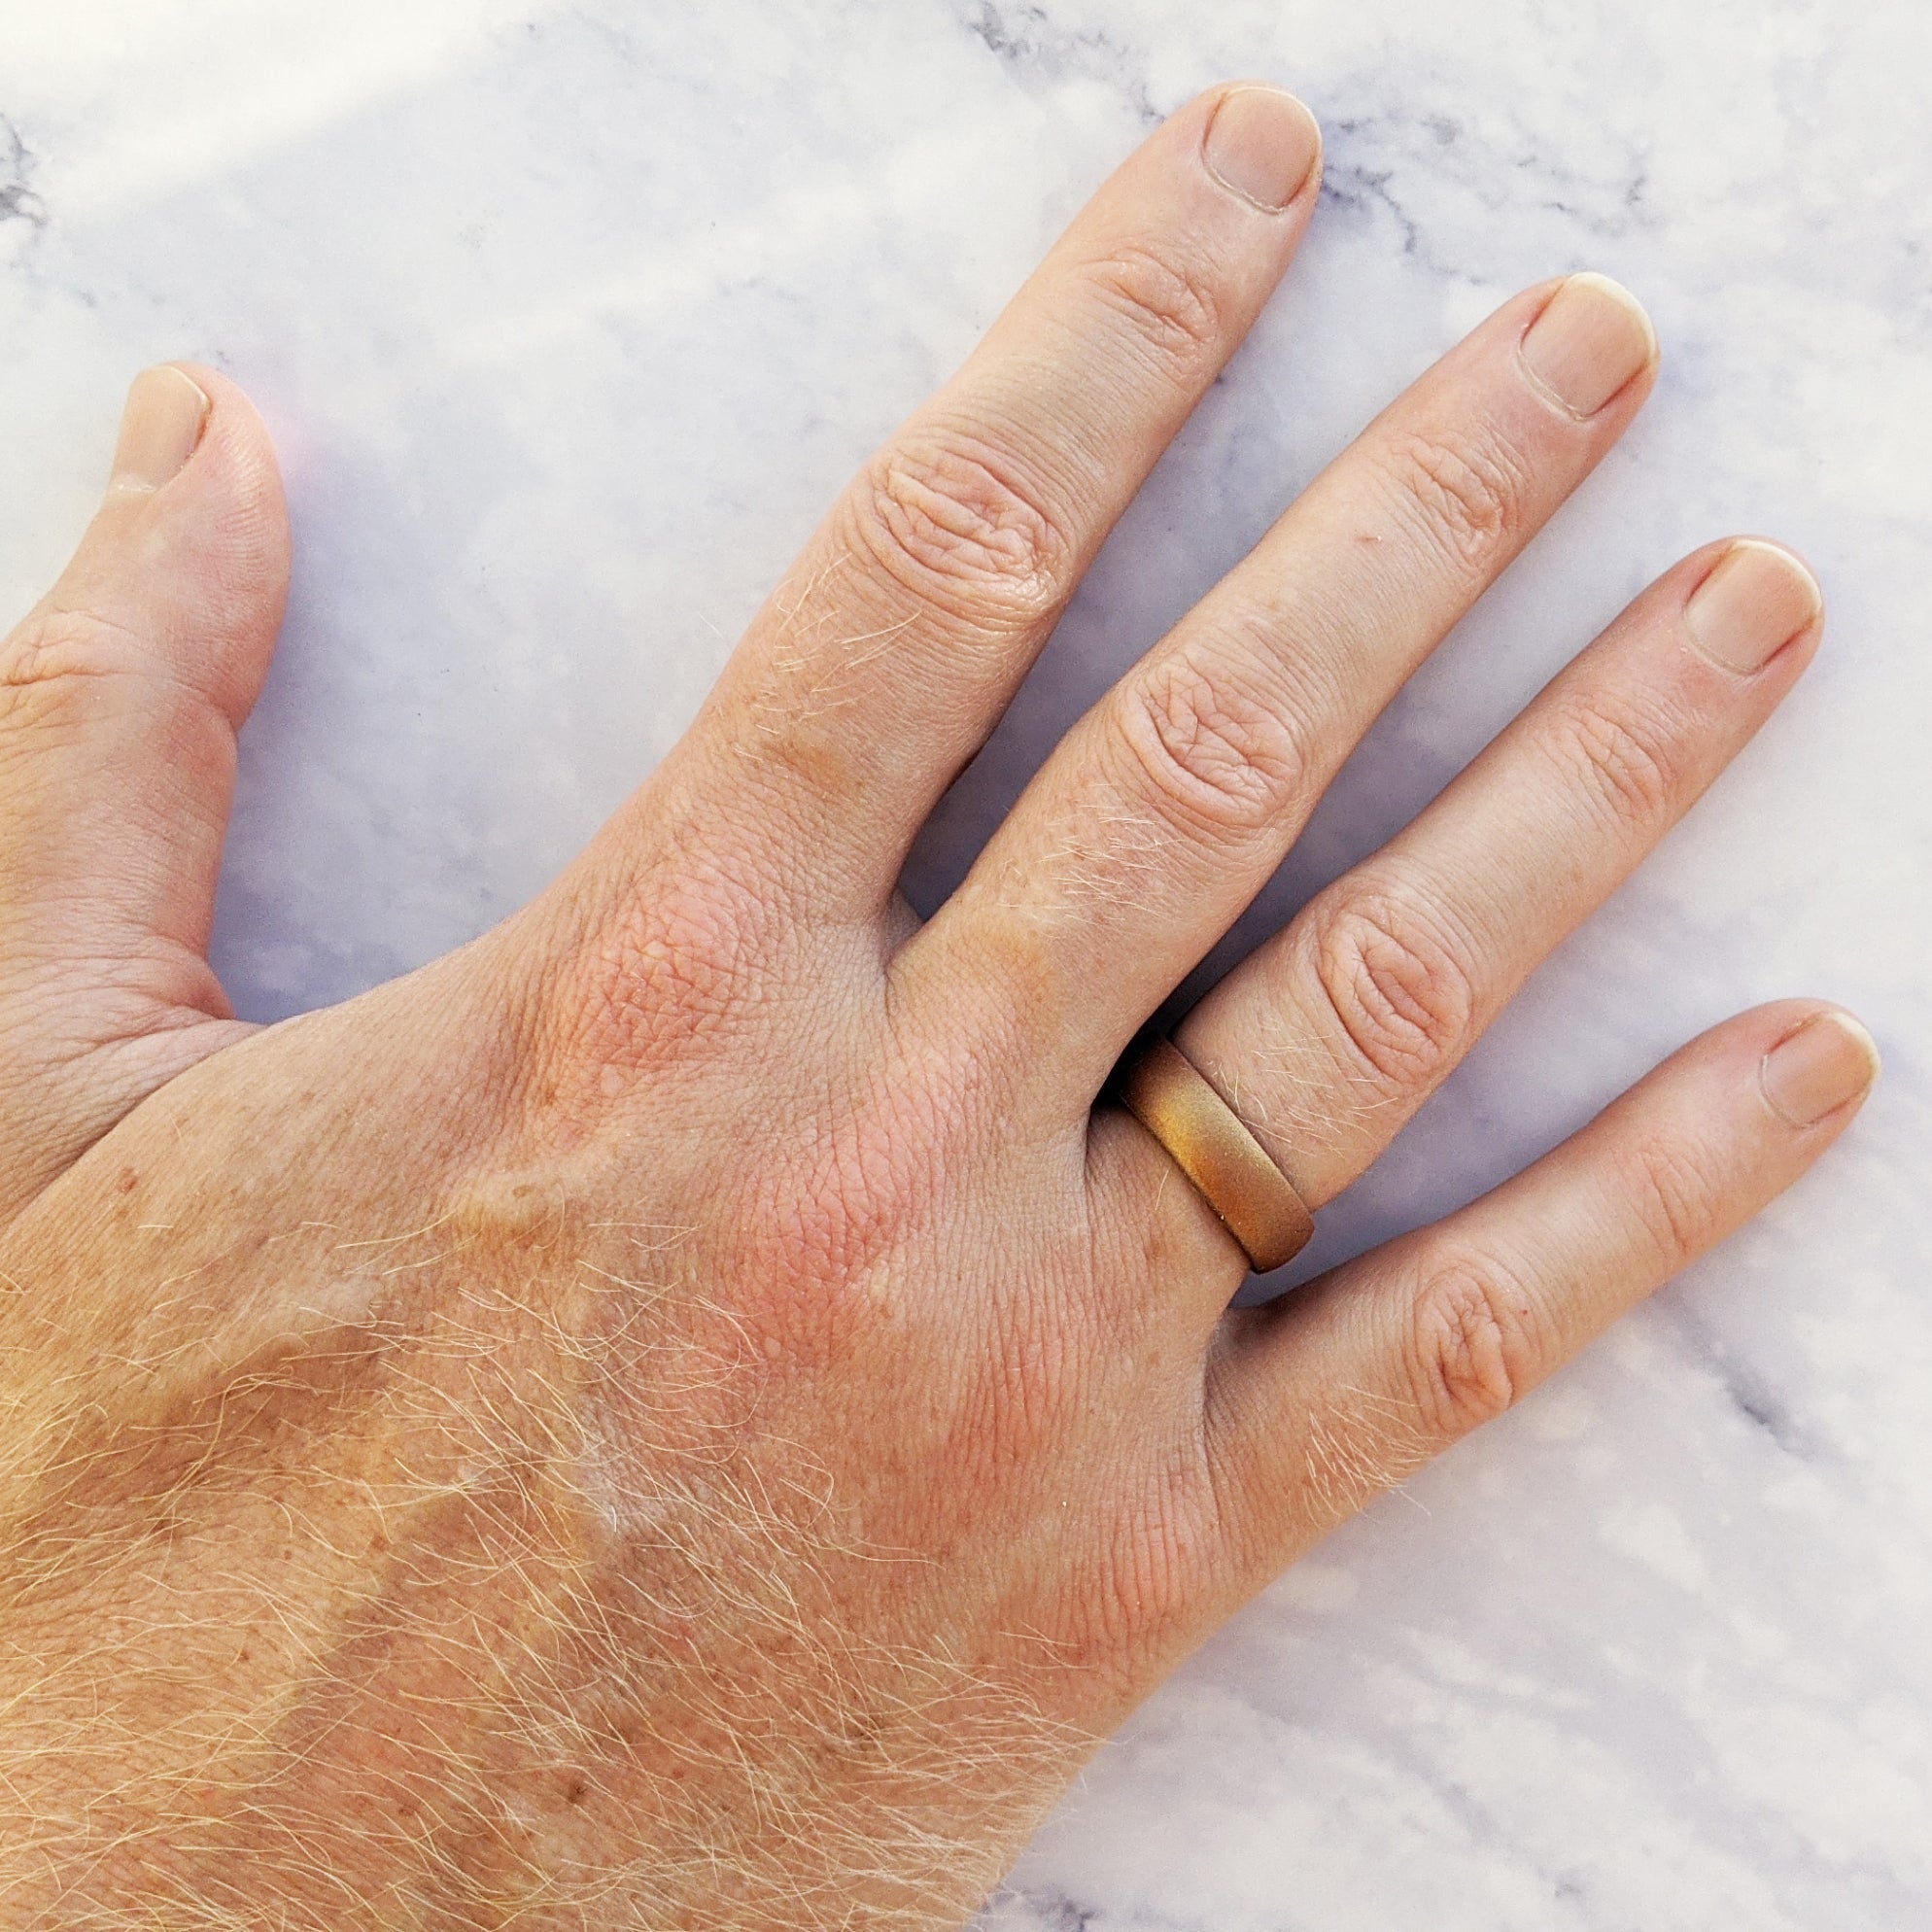 Glamorous Black Antique Gold Finger Ring For Men